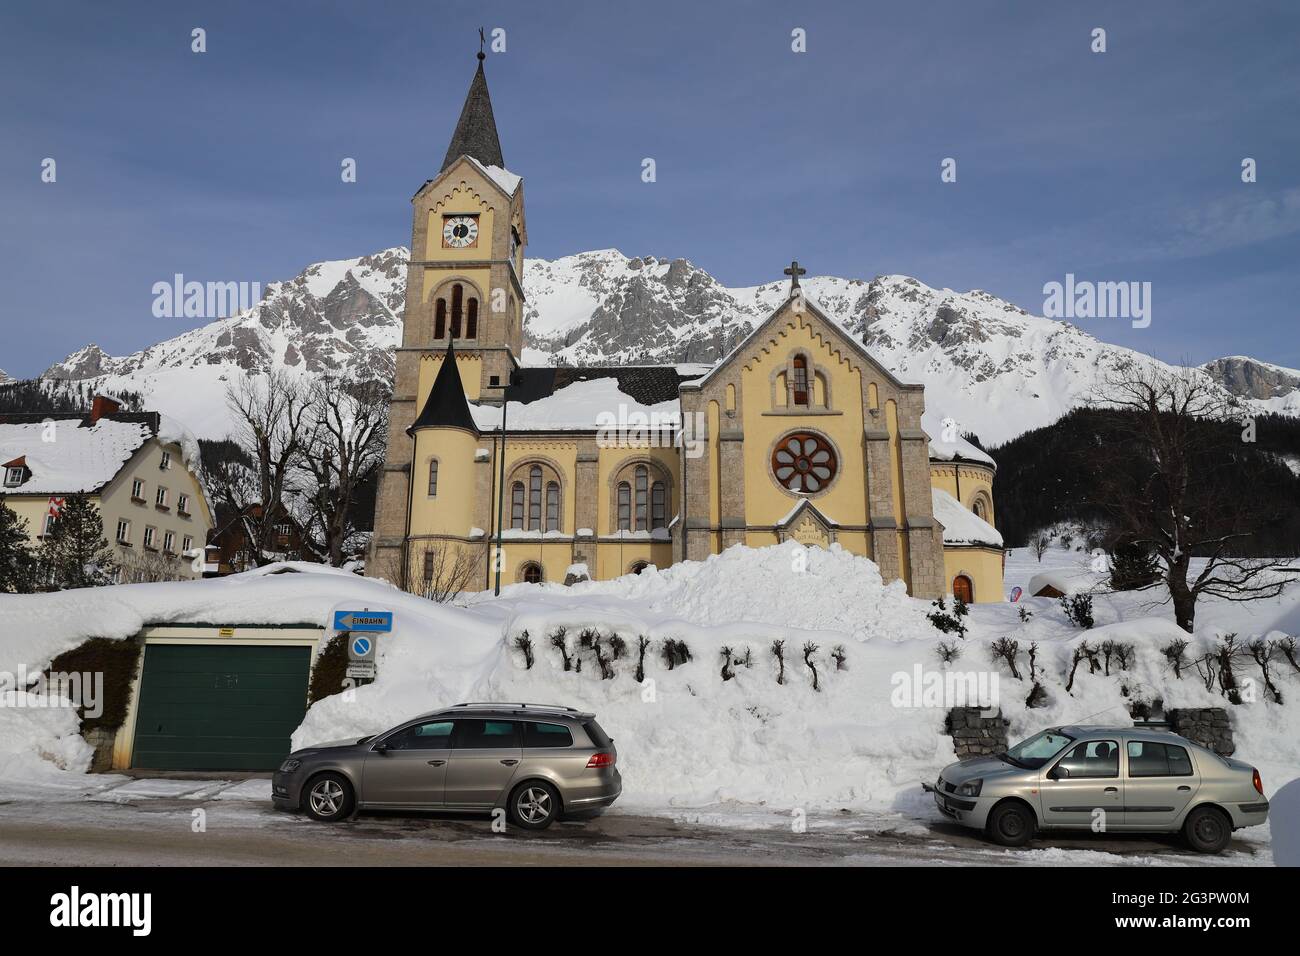 ÖSTERREICH, STEIERMARK, RAMSAU AM DACHSTEIN - 19. Januar 2019: Evangelische Kirche in Ramsau am Dachstein Stockfoto